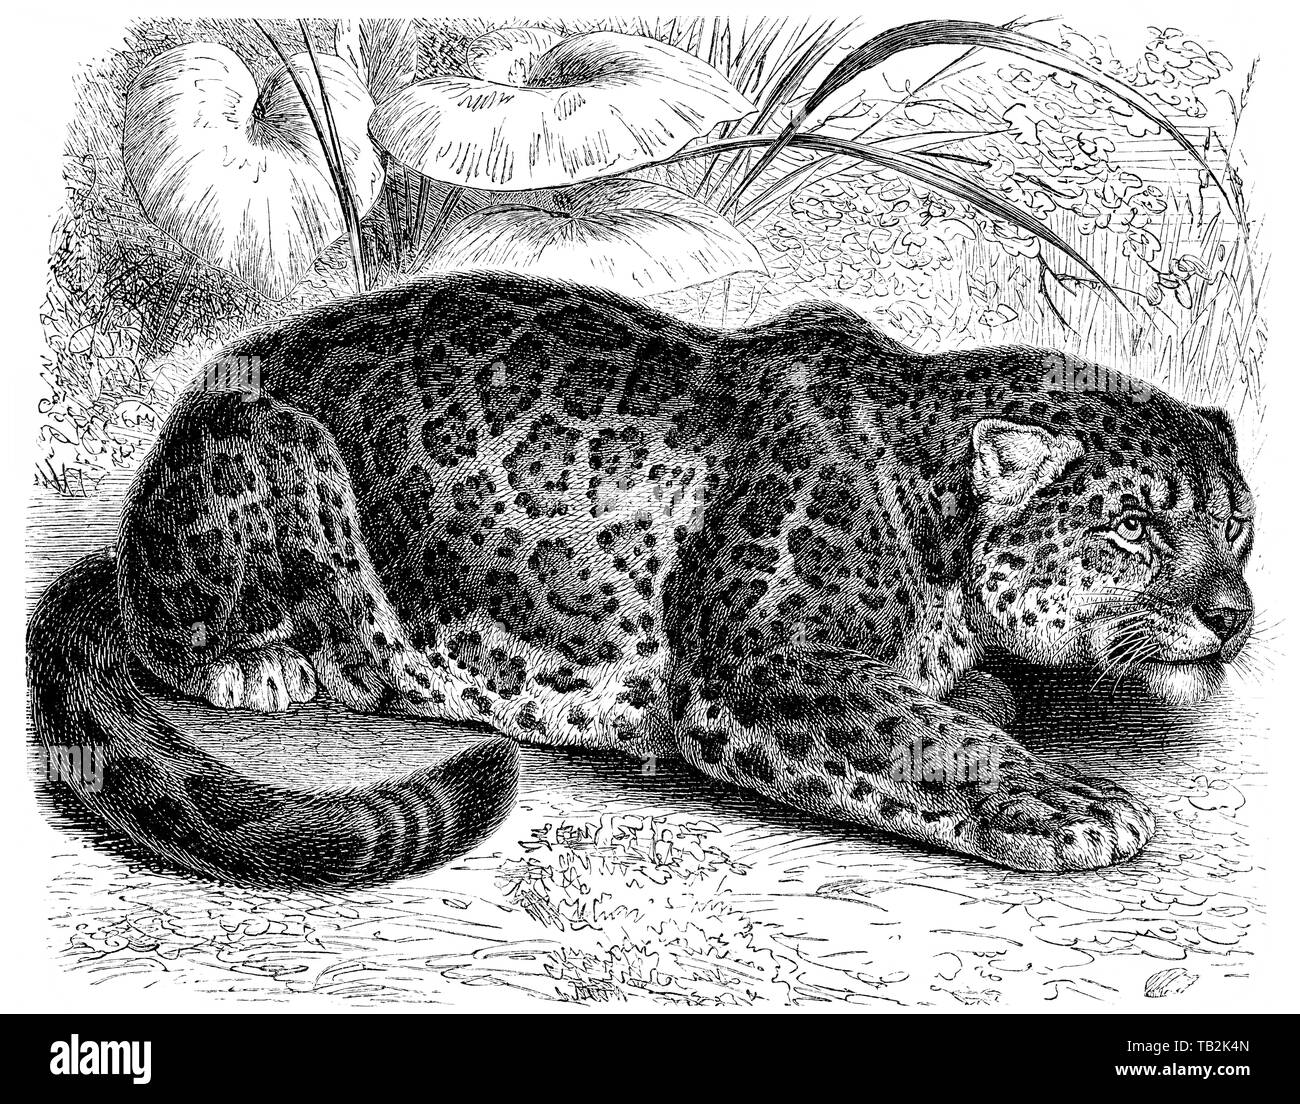 Pantherkatzen, Großkatze, Jaguar (Panthera onca) , 19. Jahrhundert, aus Meyers Konversations-Lexikon, 1889 Stock Photo